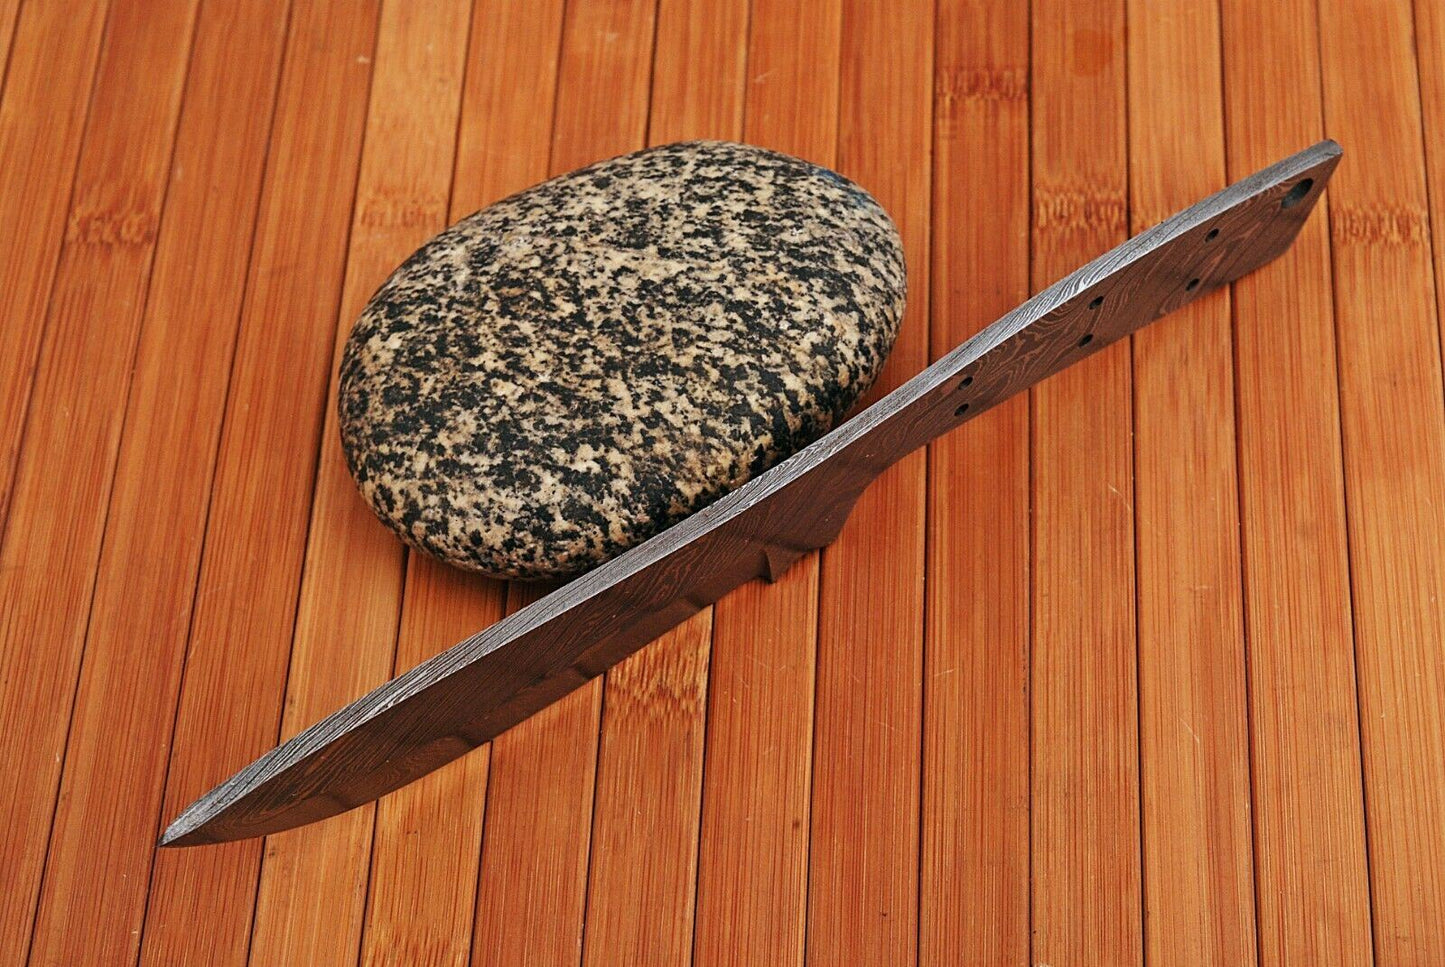 Custom Handmade Full Tang Damascus Steel Blank Blade for Knife Making Supply (9)